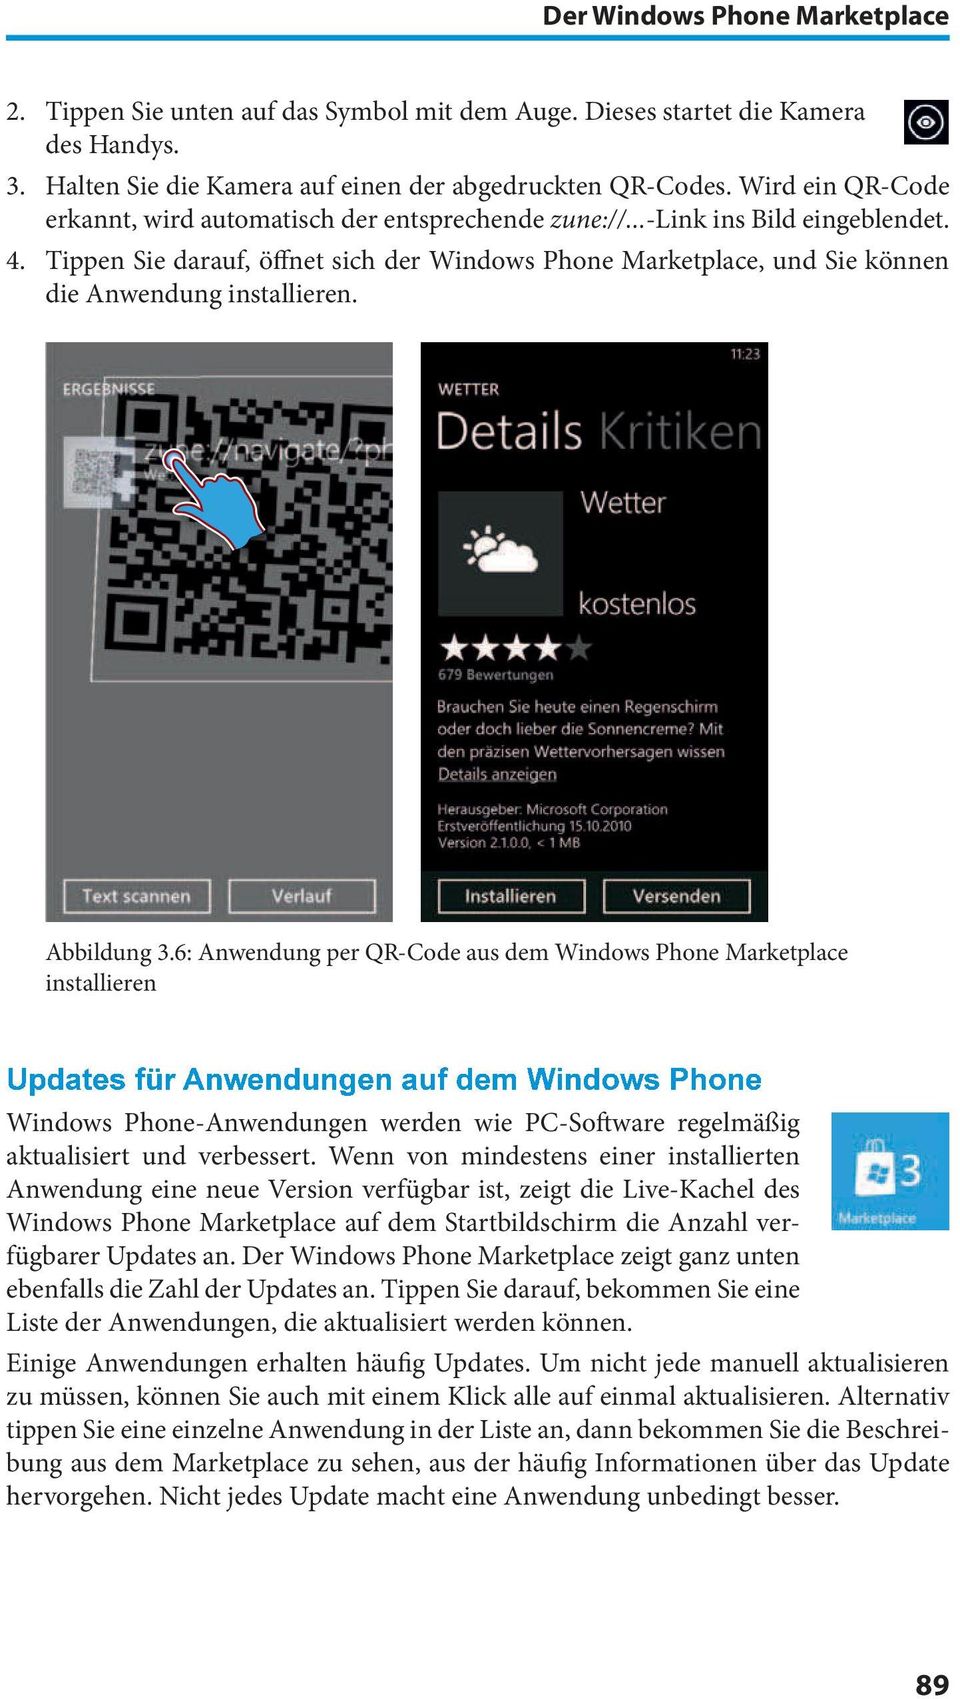 Tippen Sie darauf, öfnet sich der Windows Phone Marketplace, und Sie können die Anwendung installieren. Abbildung 3.